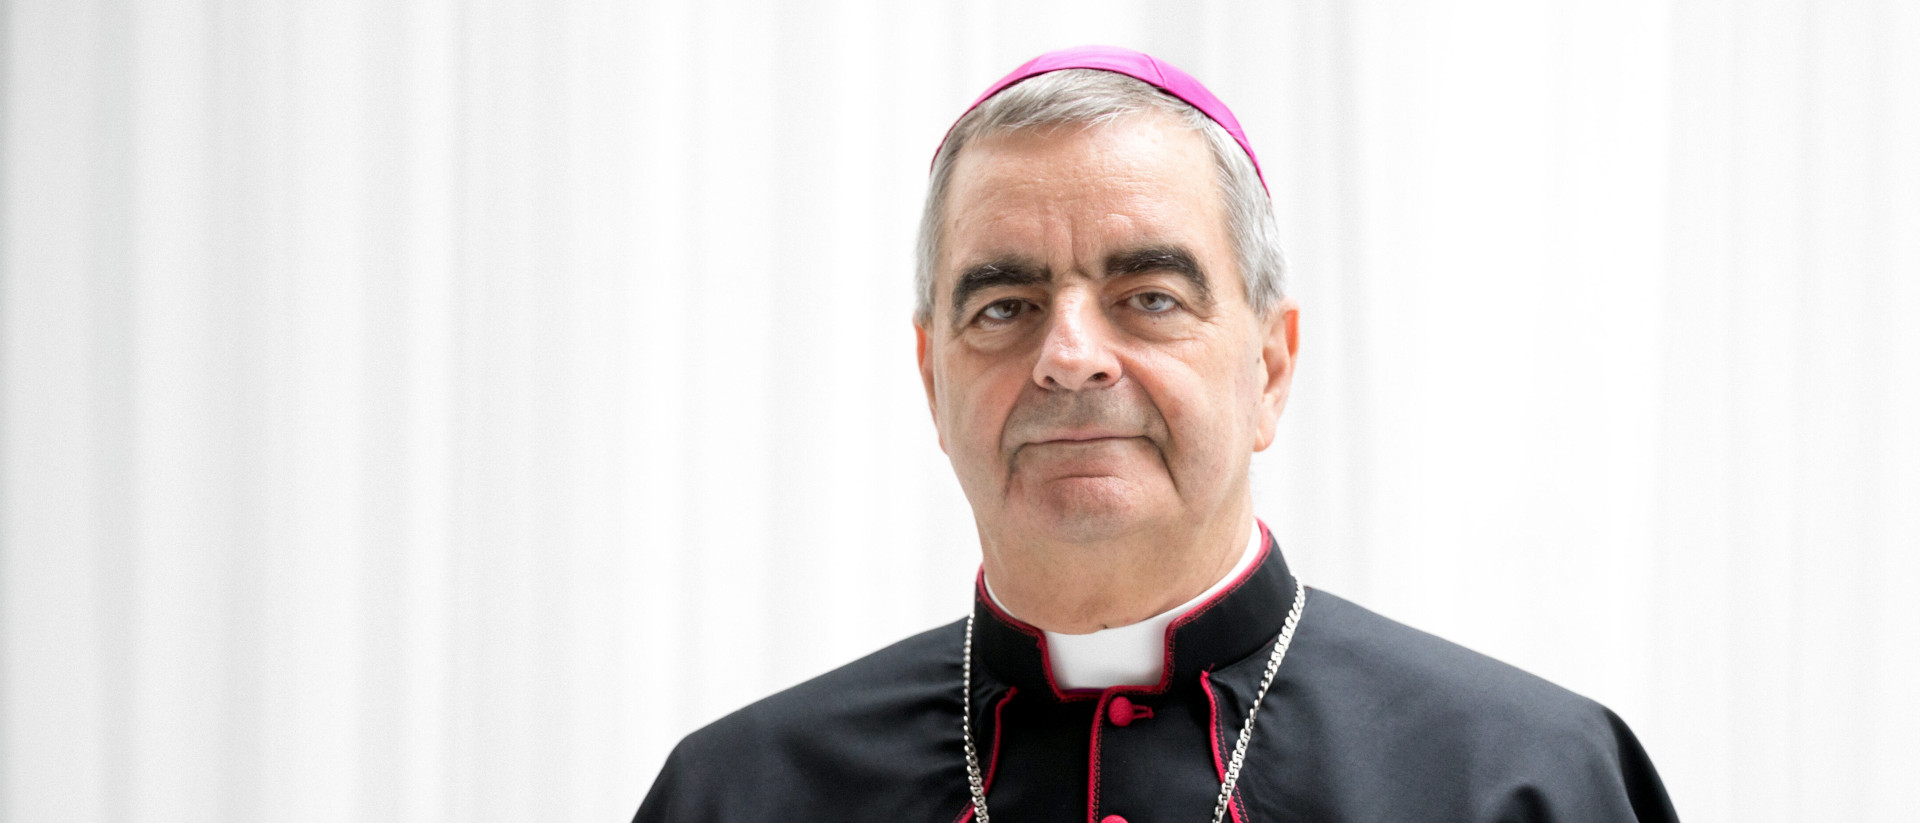 Erzbischof Nikola Eterovic, Apostolischer Nuntius in Deutschland, am 7. Juli 2021 in der Apostolischen Nuntiatur in Berlin.